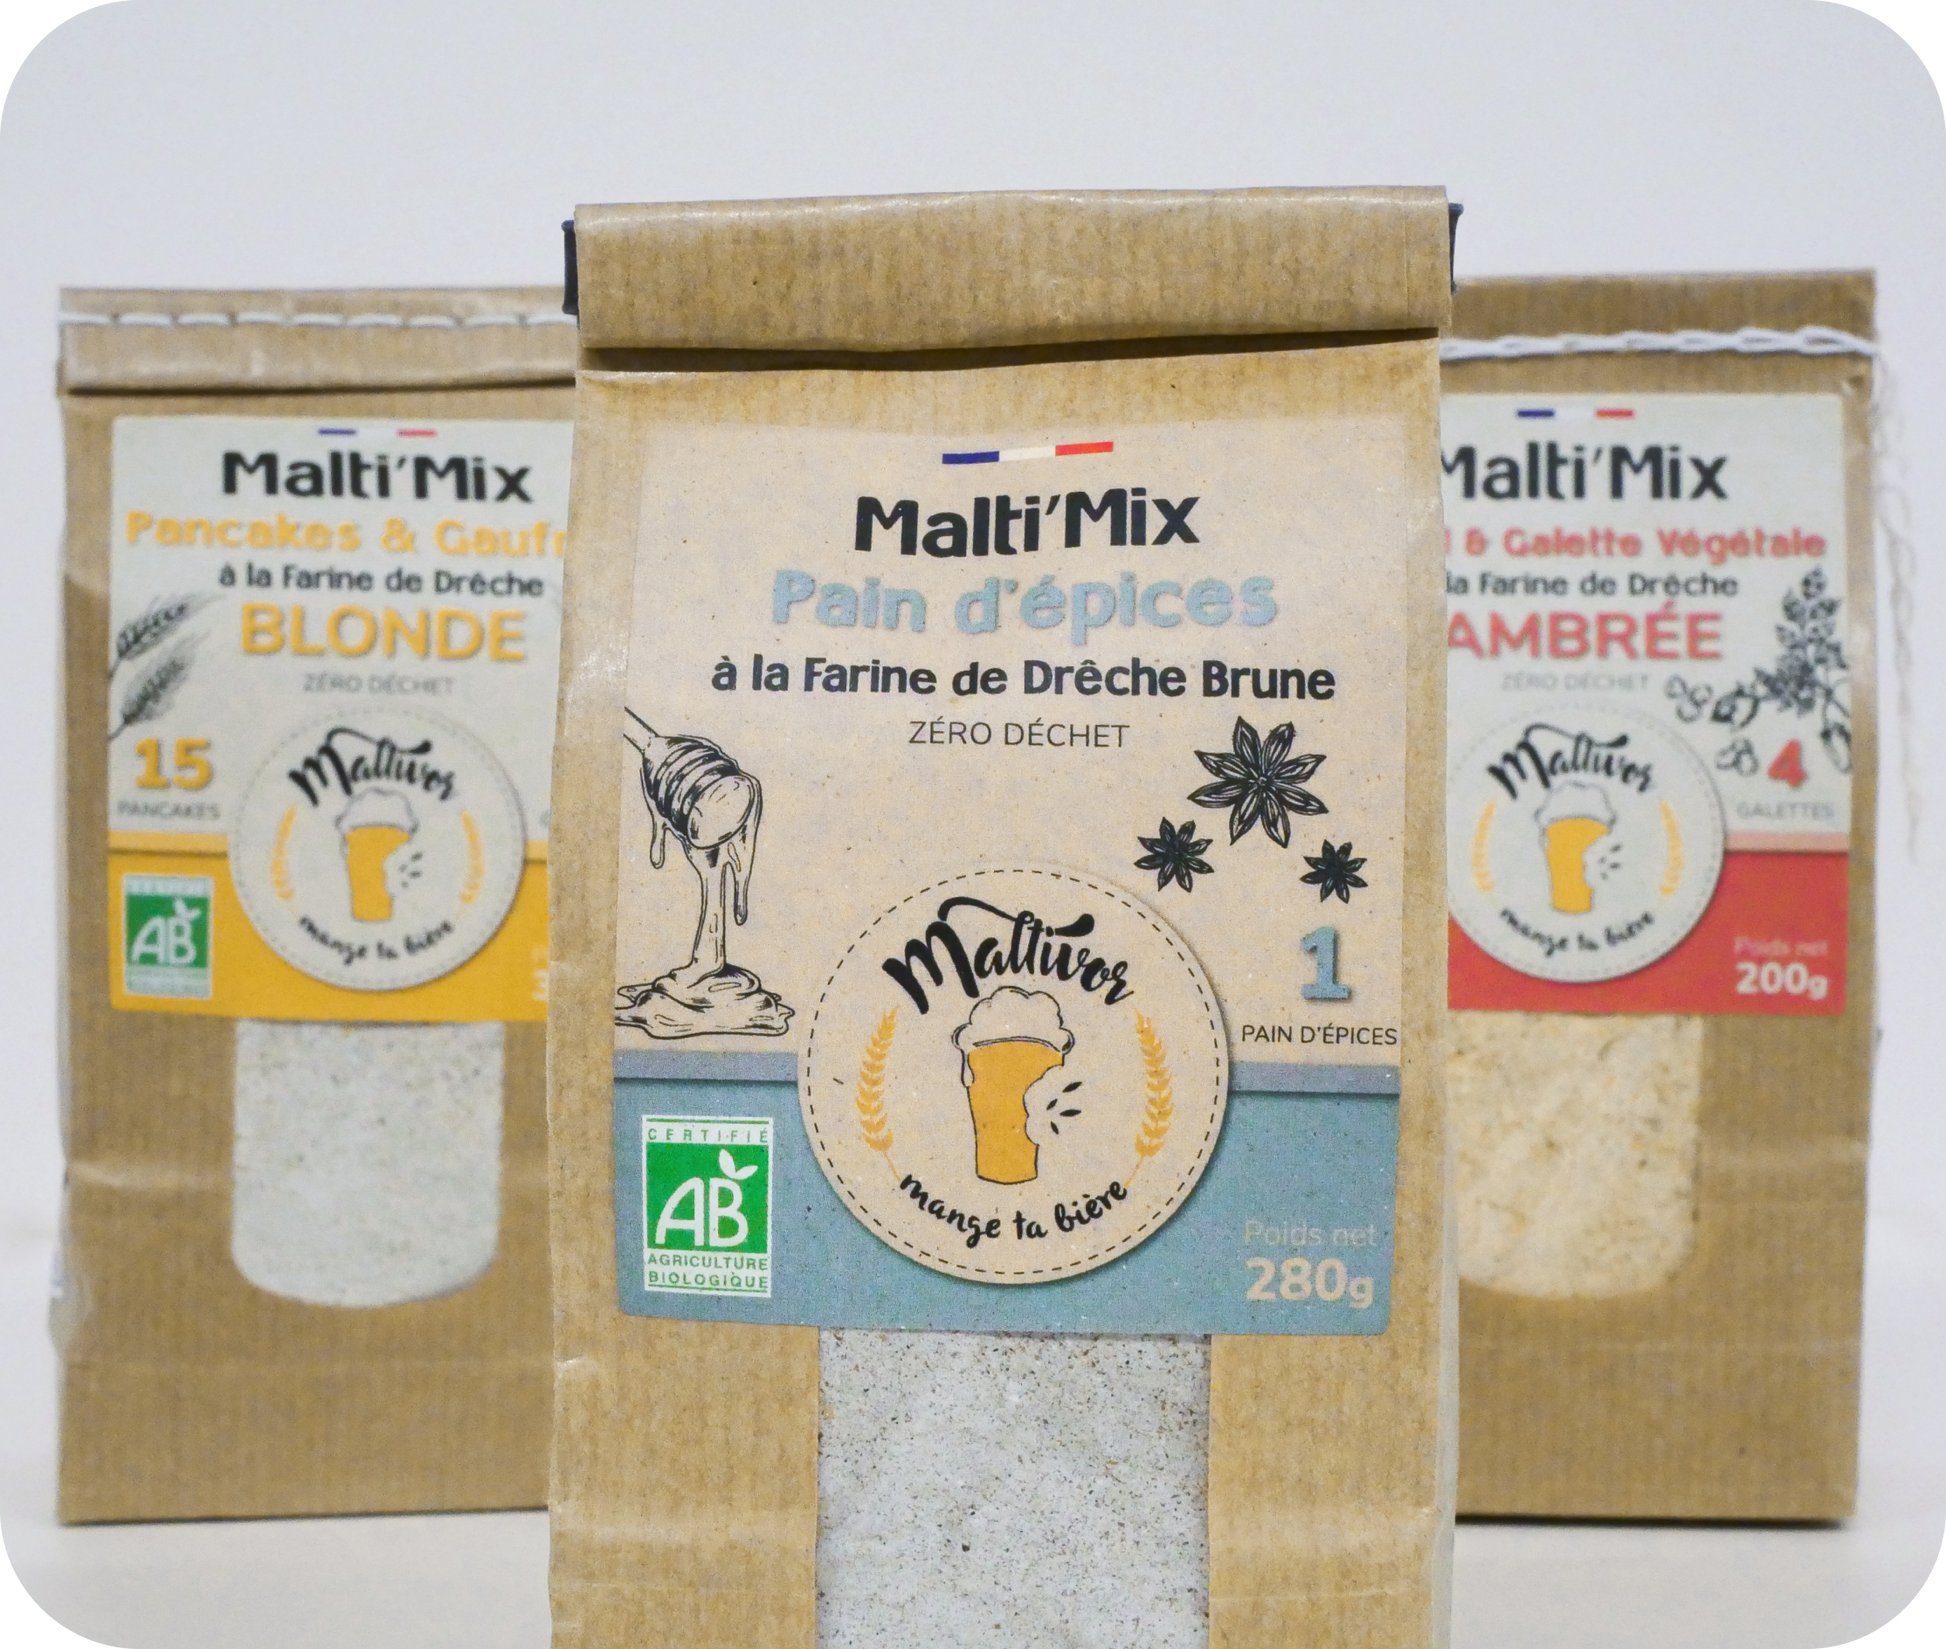 Sachet de Malti’Mix pour pain d'épices à la farine de drêche de bière brune Maltivor entouré de sachets de Malti'Mix pour pancakes & gaufres et de Malti'Mix pour Falafel & Galette végétale maltivor